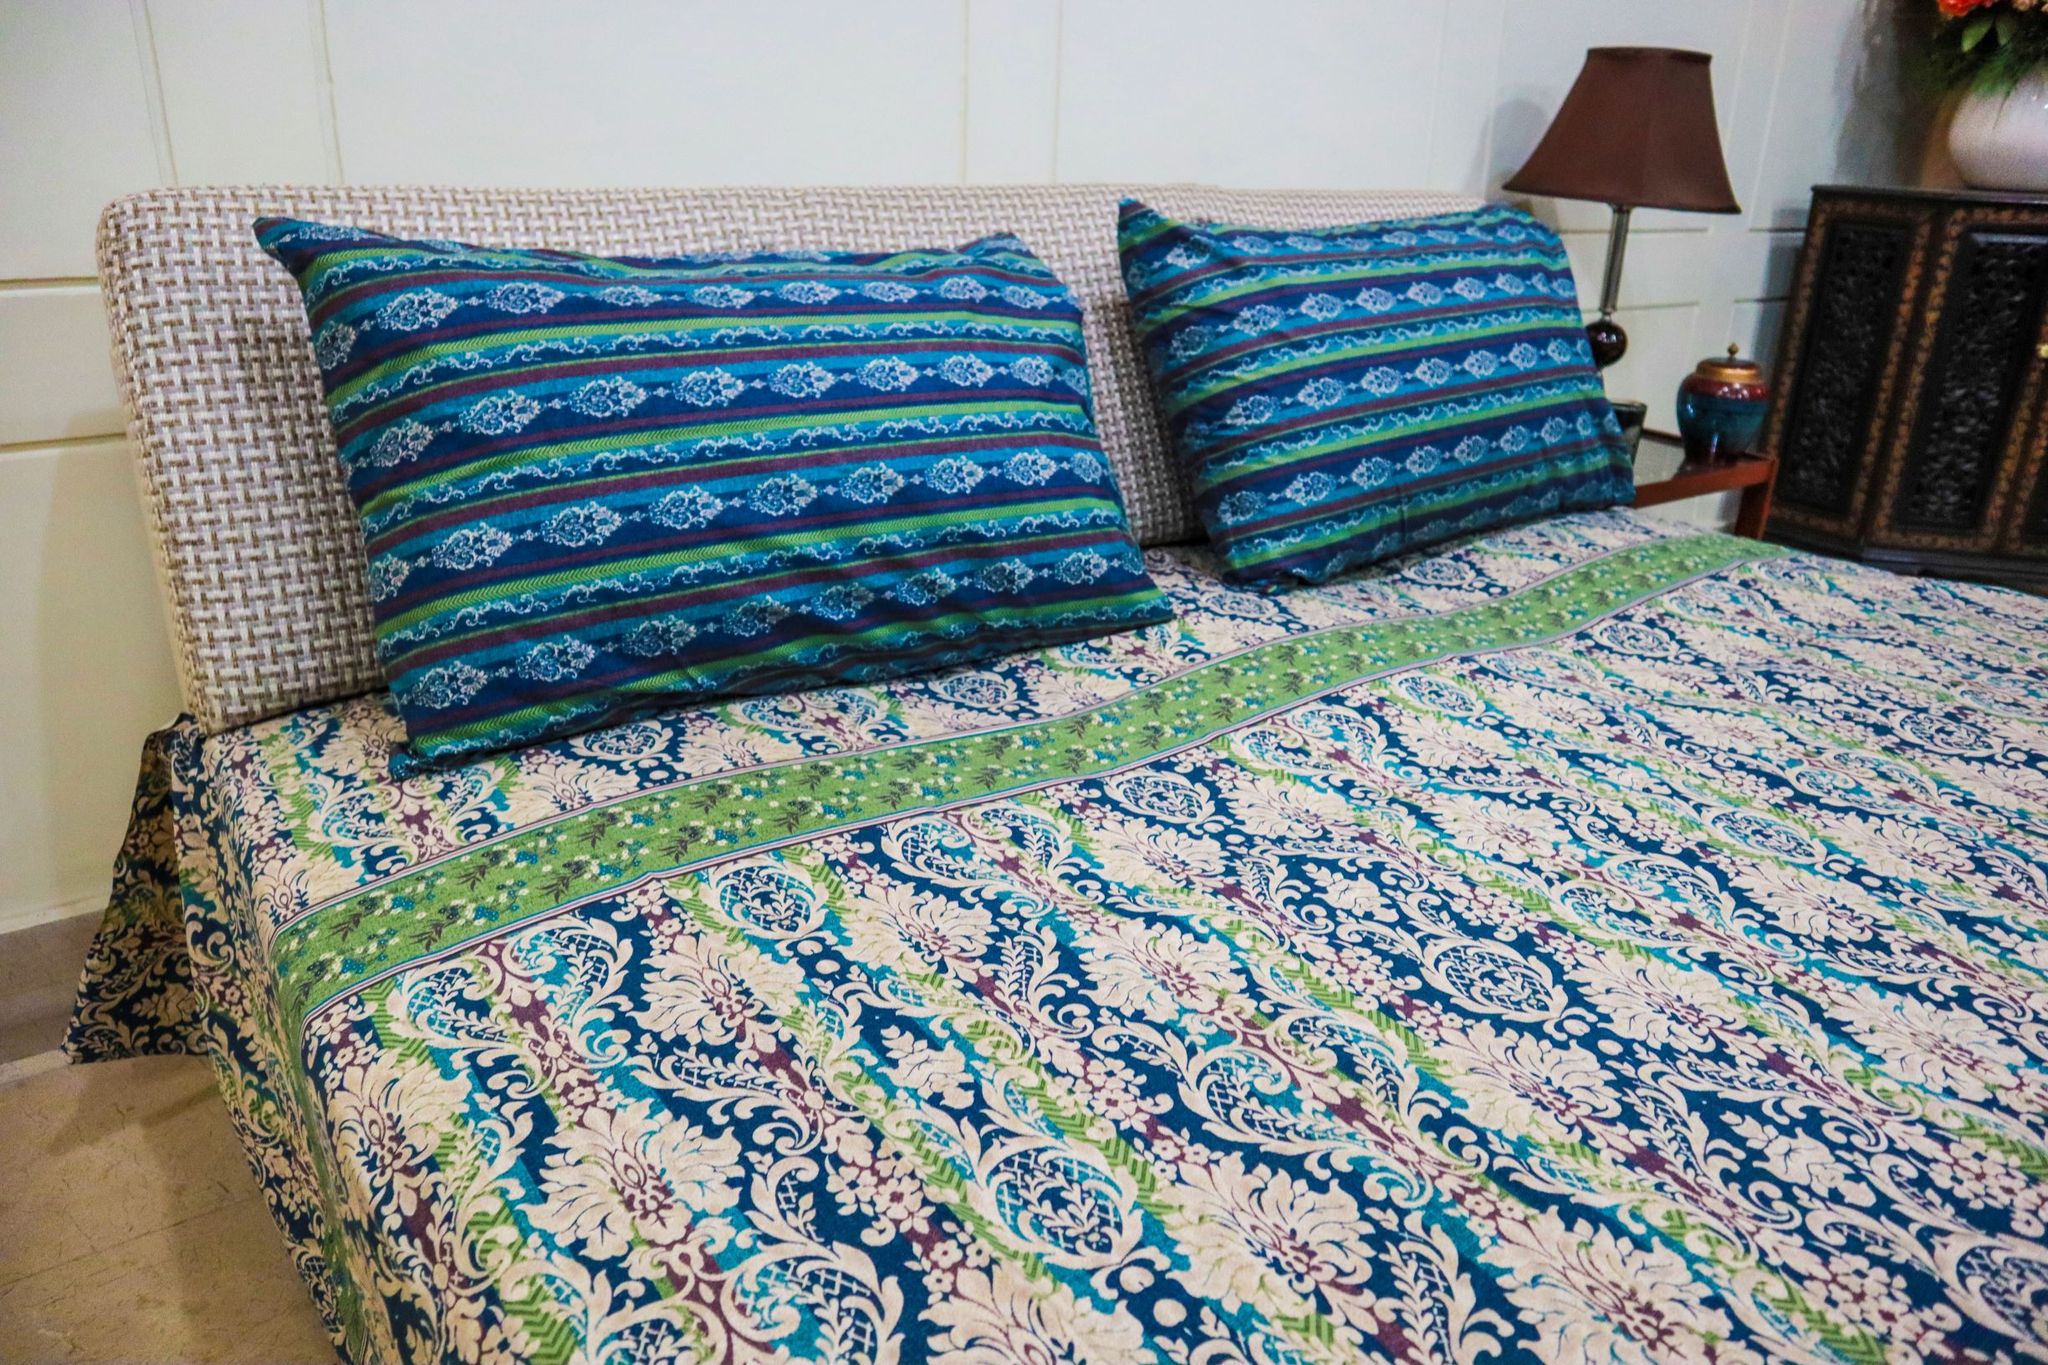 Floral Ocean Bed Sheet Set - King Size